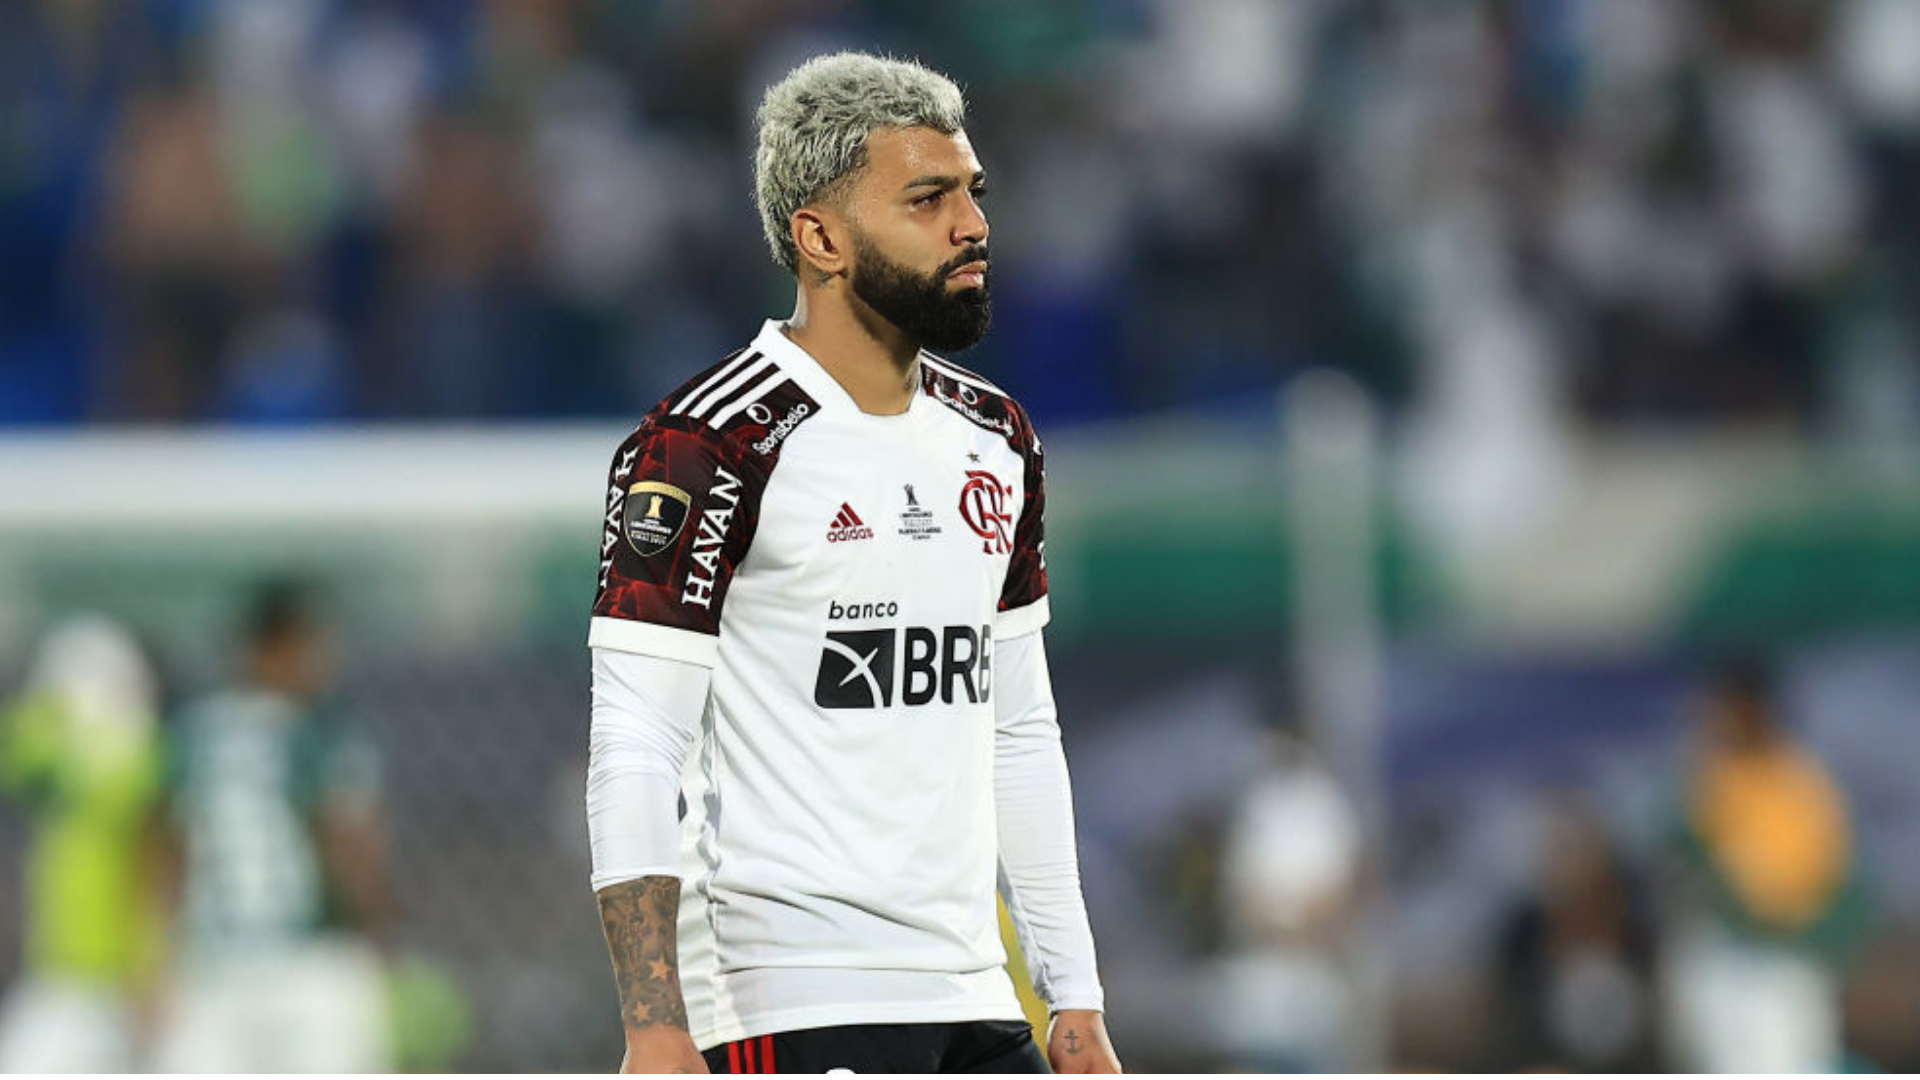 Confira os memes da vitória do Palmeiras sobre Flamengo - Gazeta Esportiva